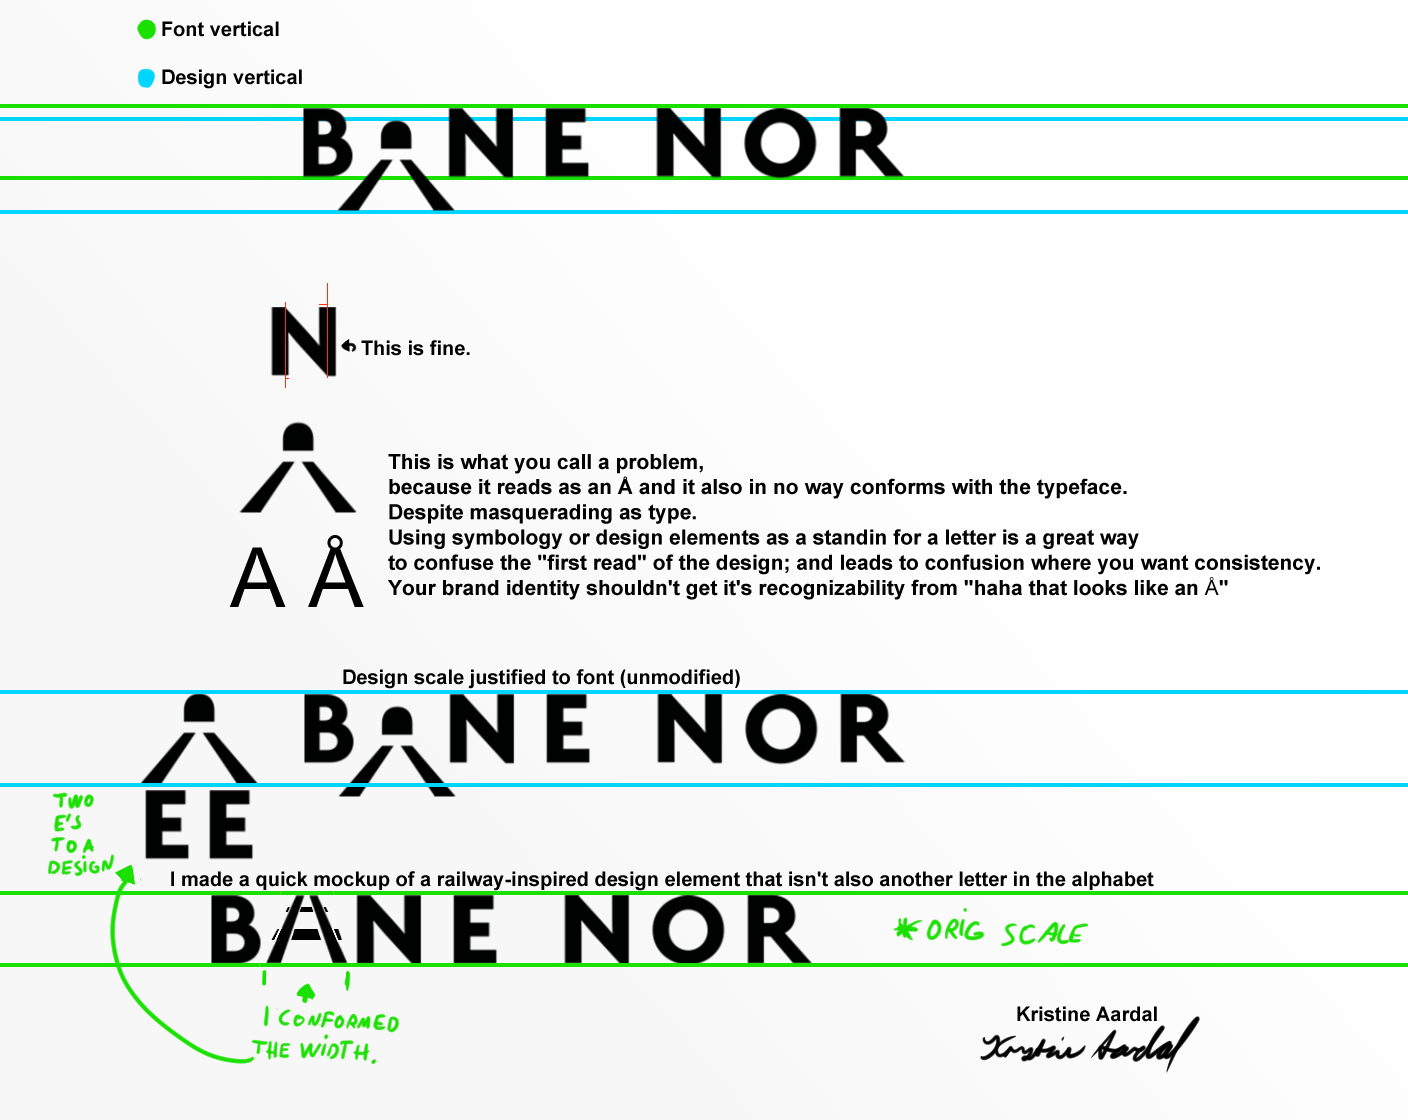 Critique of the Bane nor design